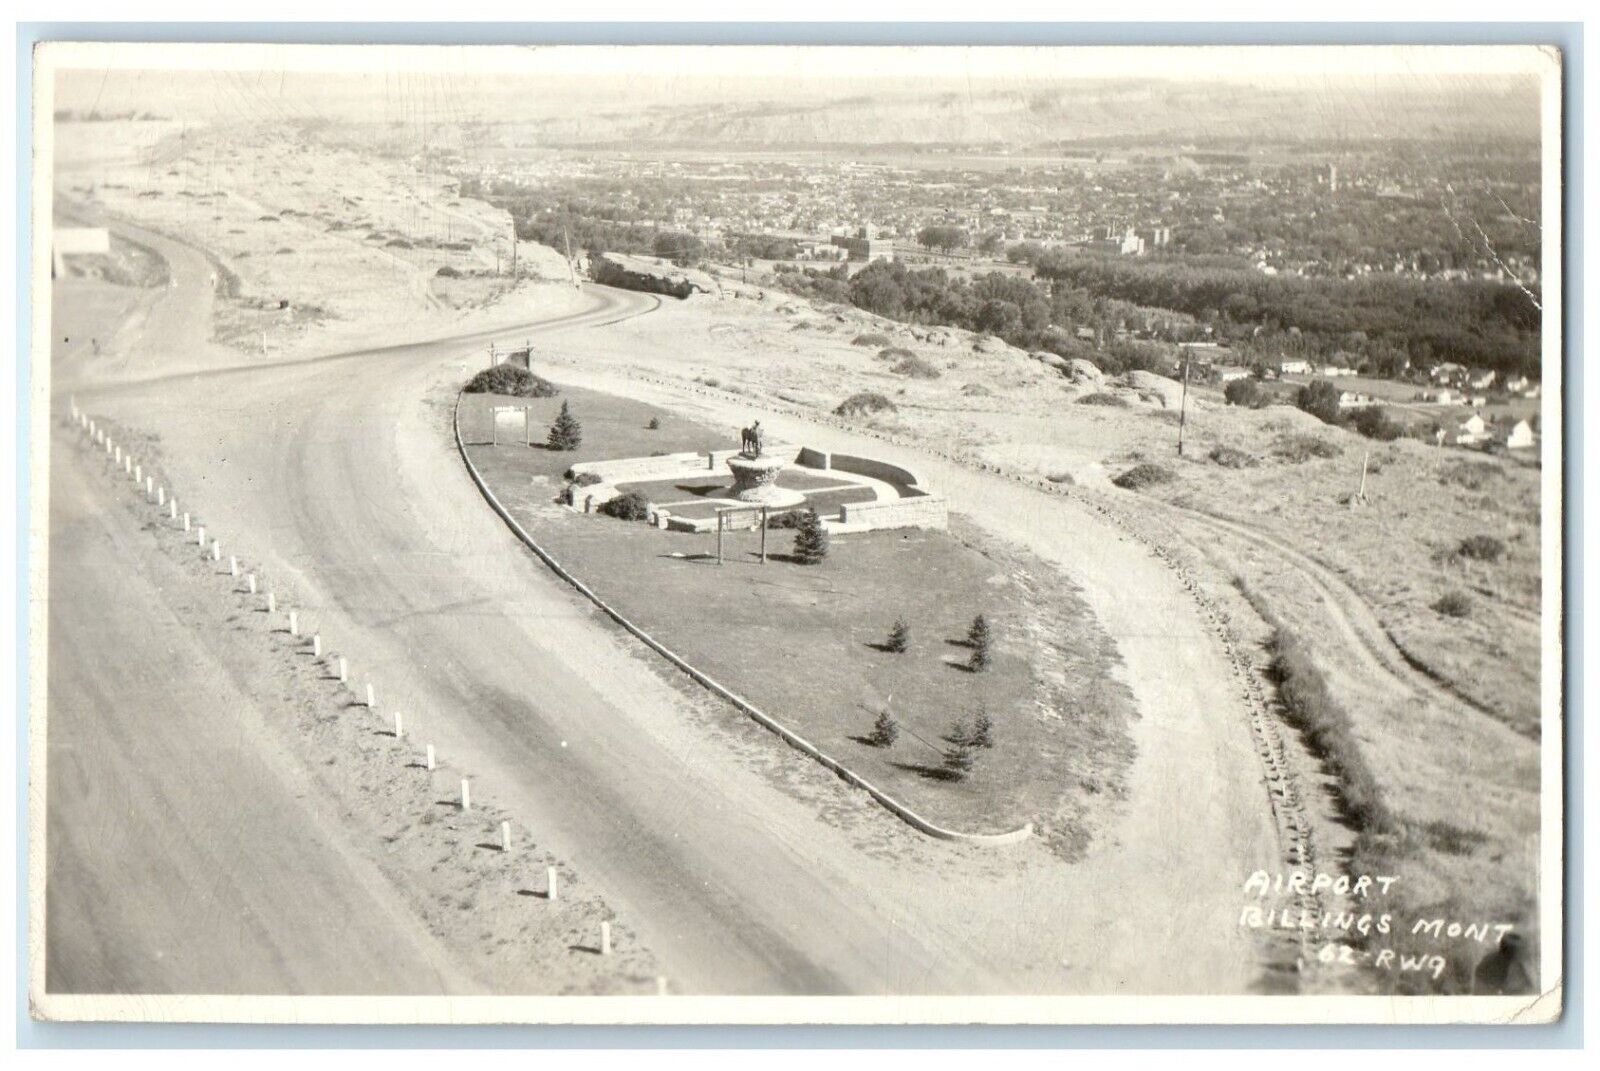 1949 Aerial View Of Airport Billings Montana MT RPO RPPC Photo Vintage Postcard